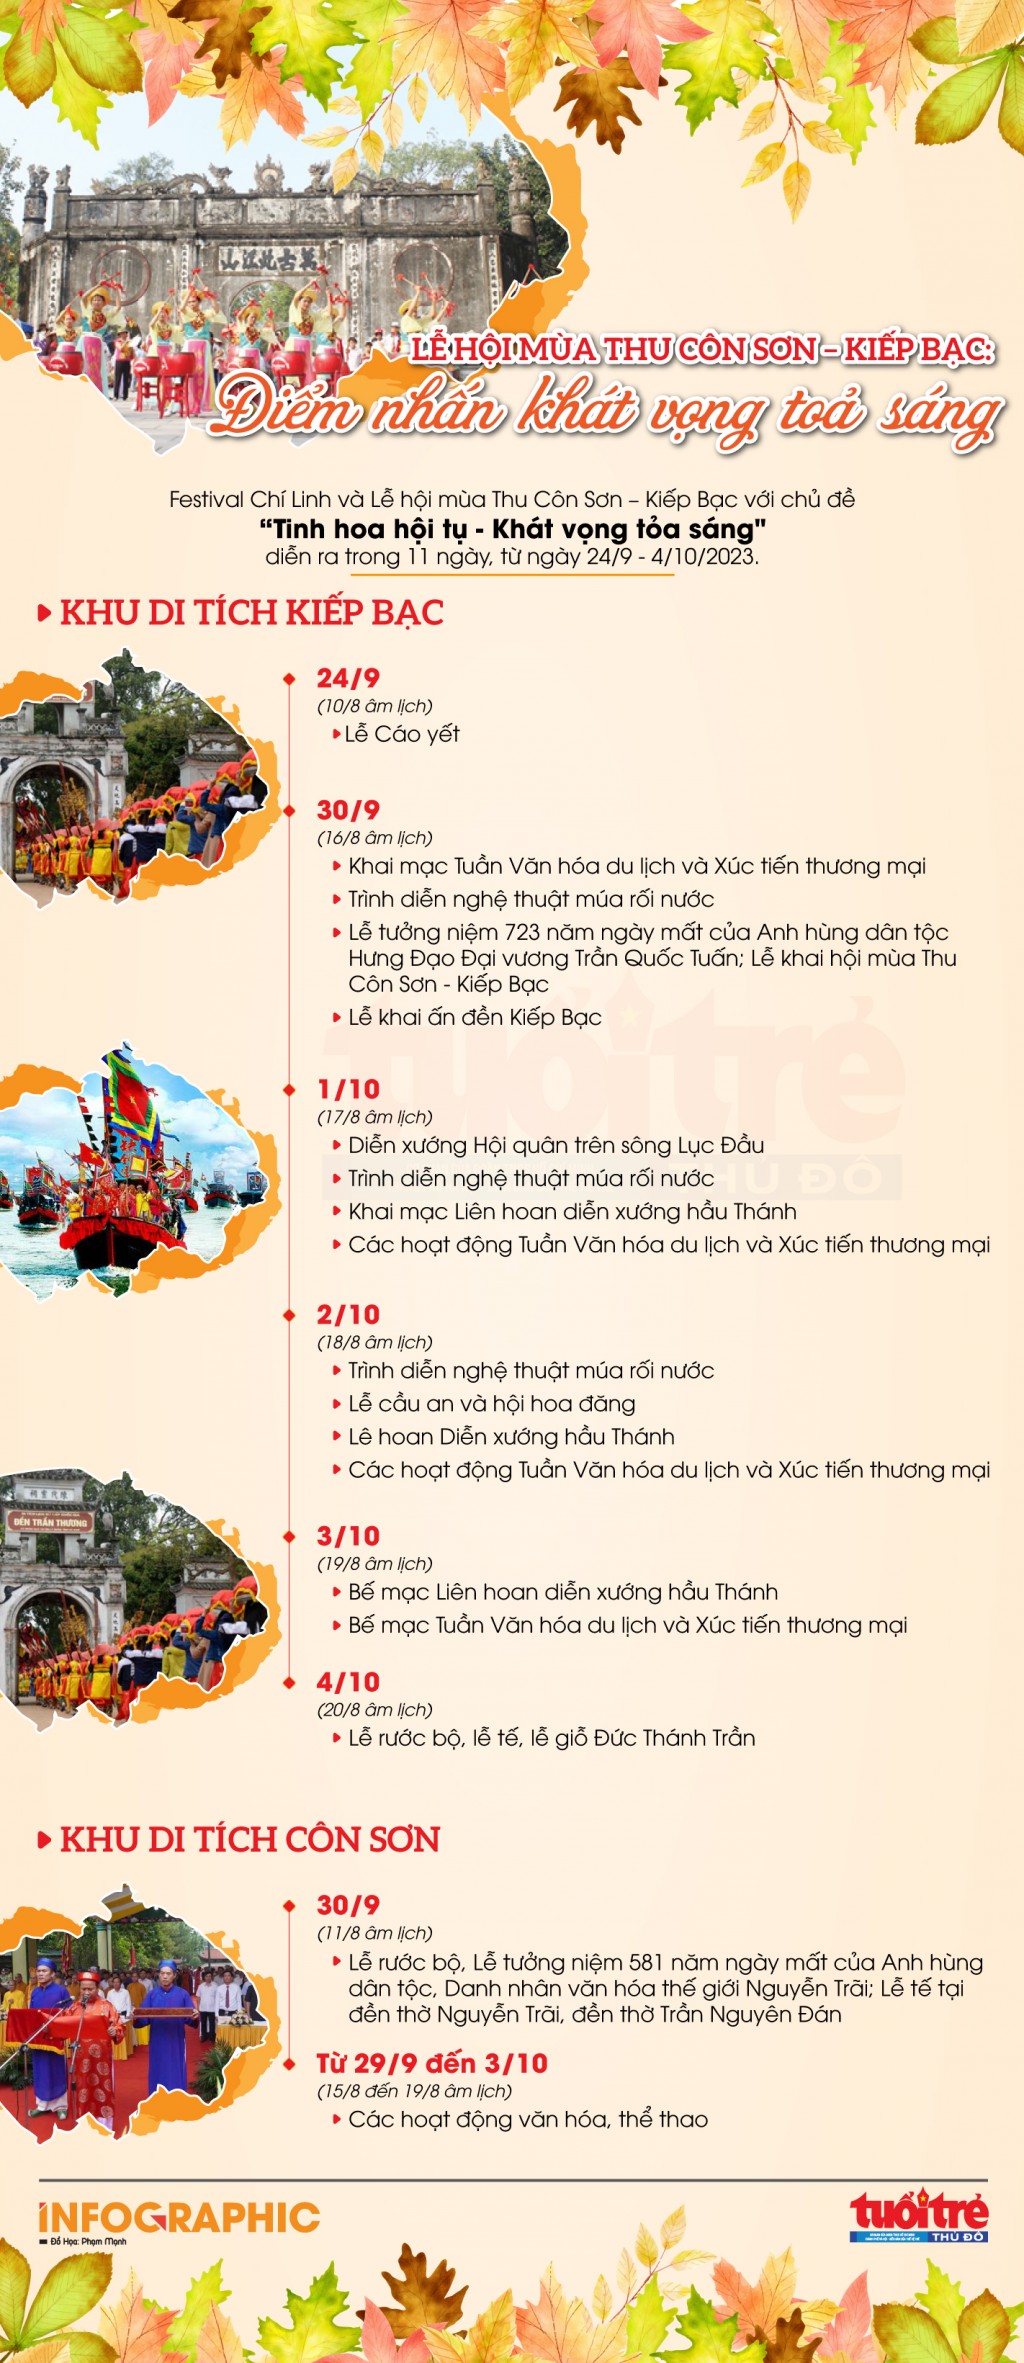 Lễ hội mùa thu Côn Sơn - Kiếp Bạc: Điểm nhấn khát vọng tỏa sáng